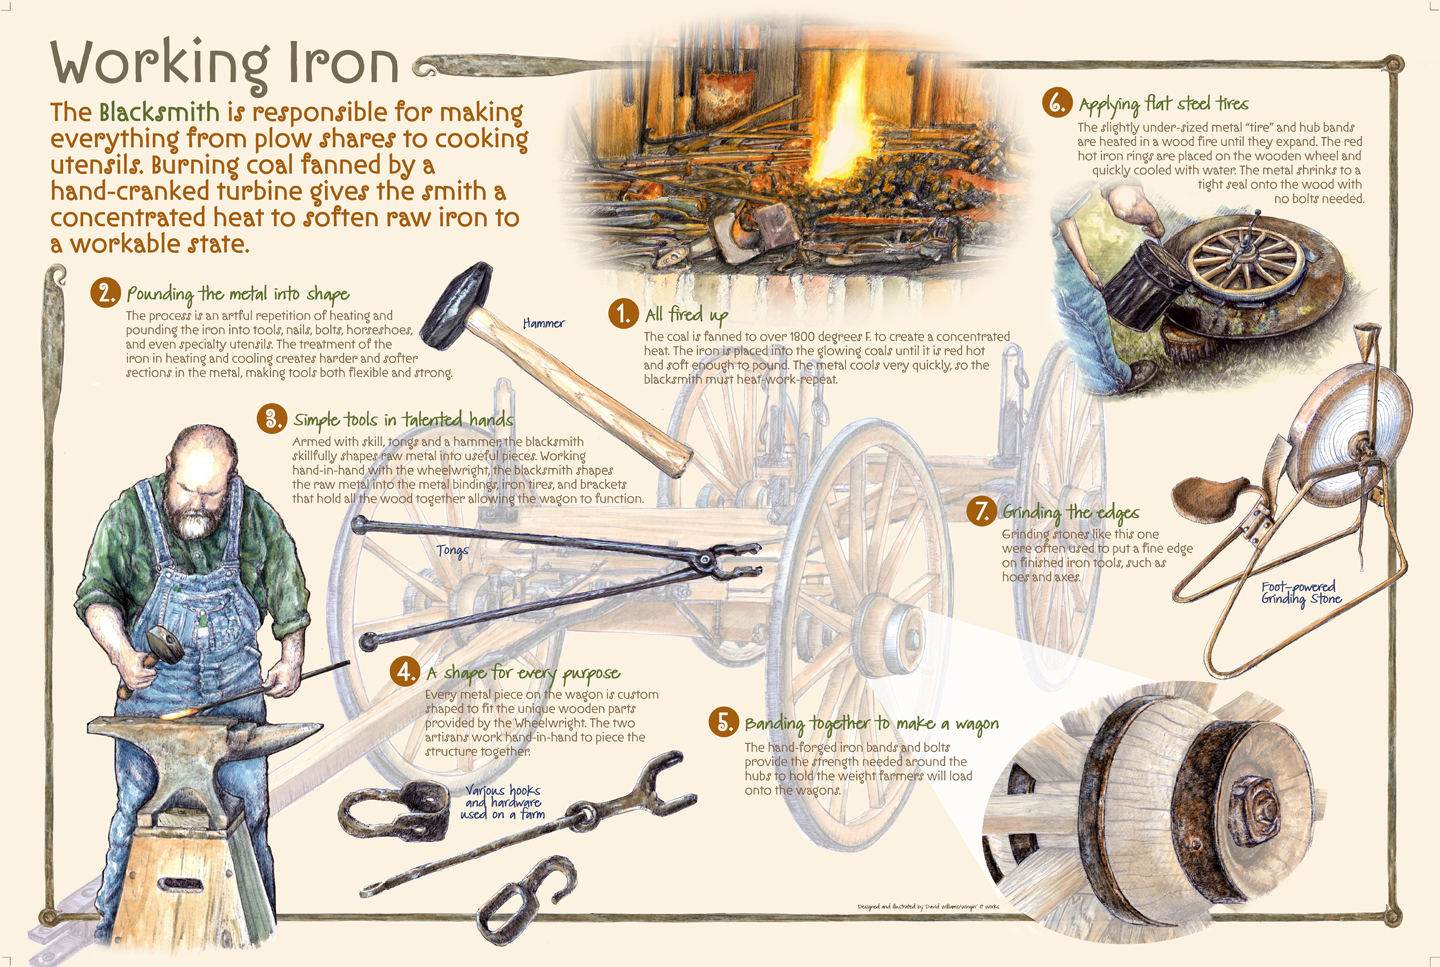 Working Iron